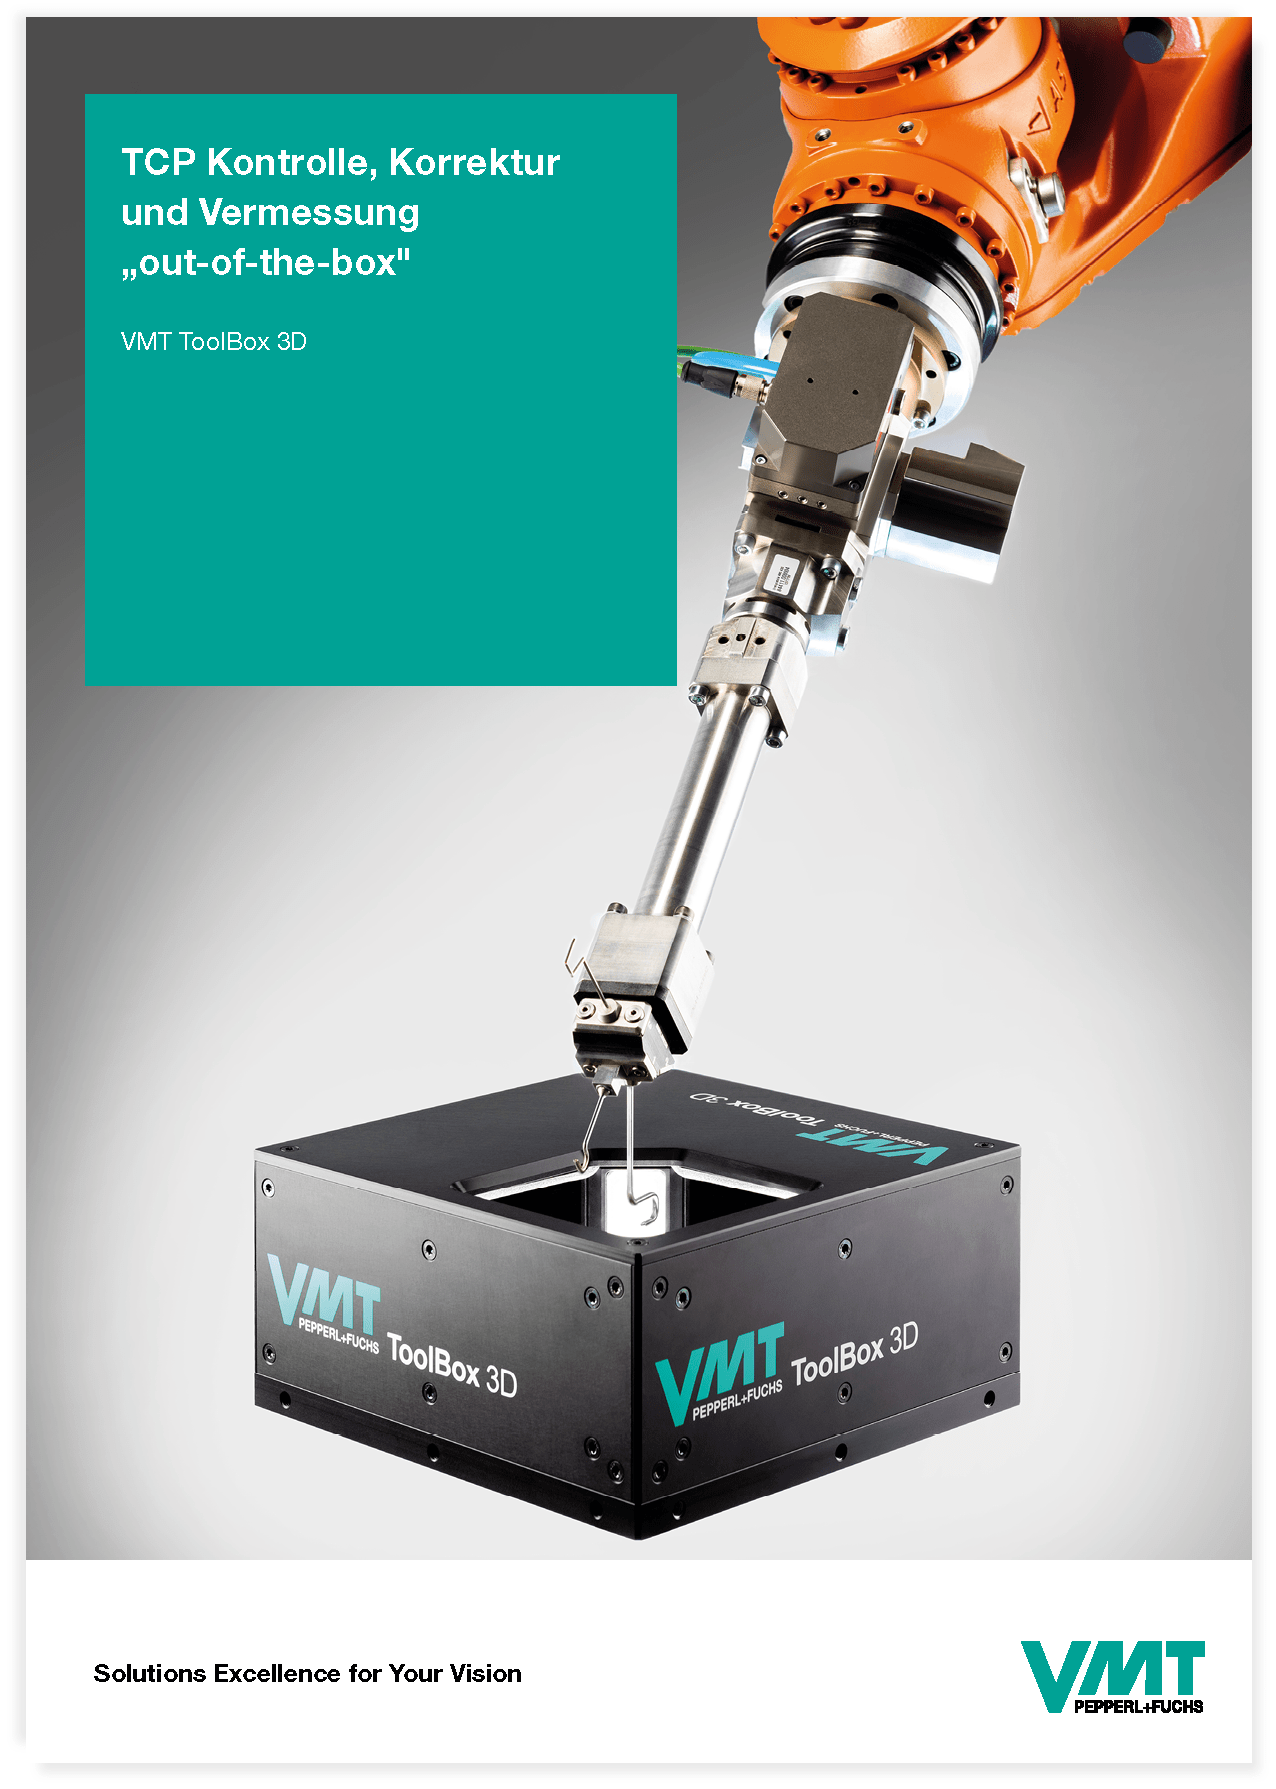 Bildverarbeitung und Lasermesstechnik - VMT Bildverarbeitungssysteme GmbH